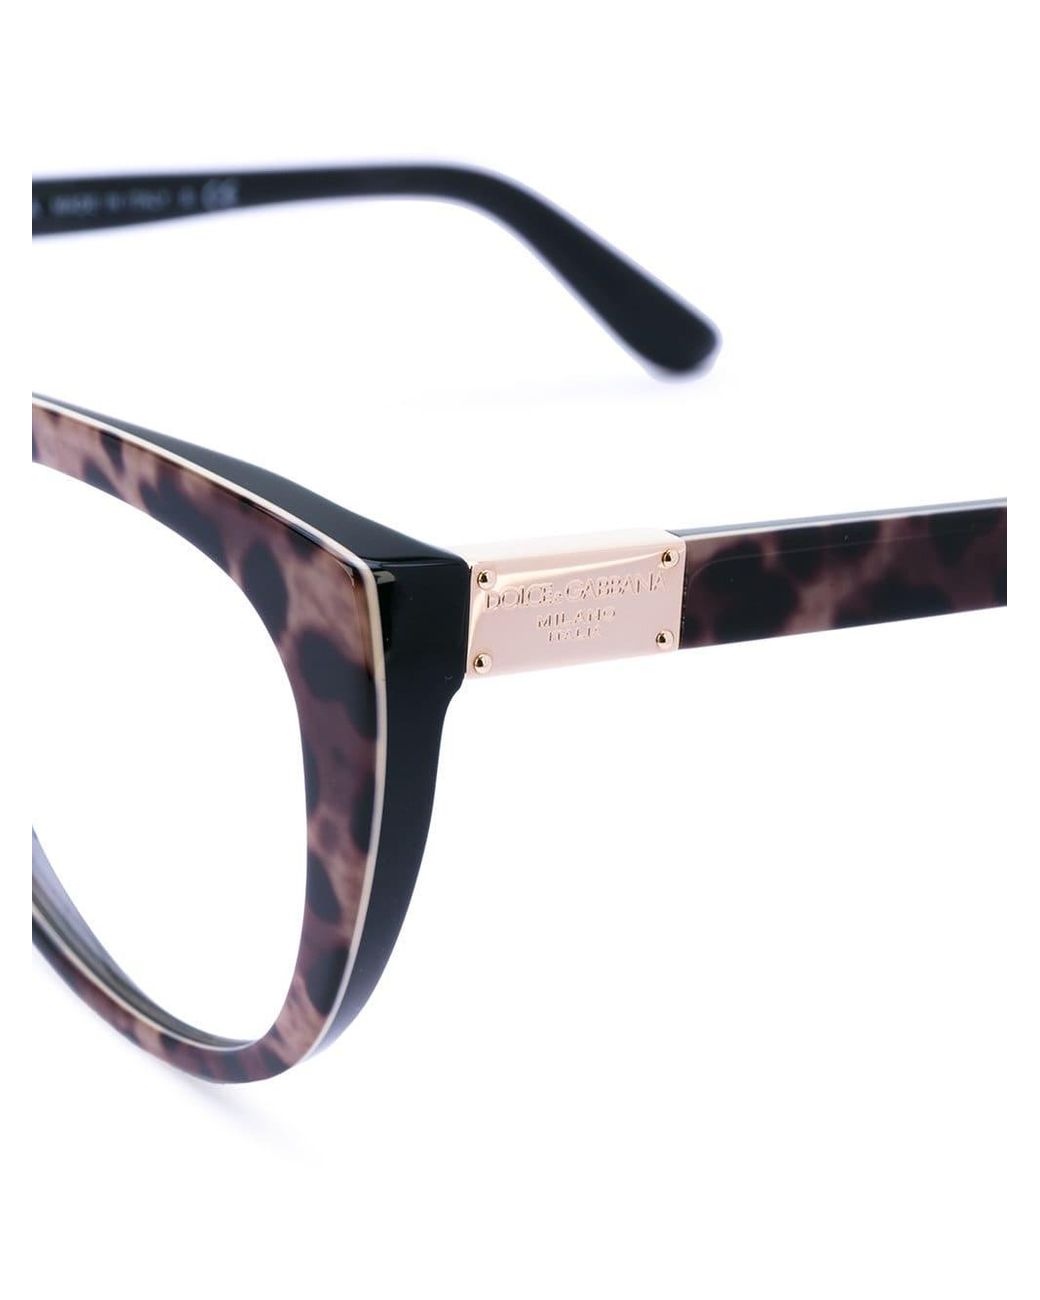 Dolce & Gabbana Brille mit Leopardenmuster in Schwarz | Lyst DE